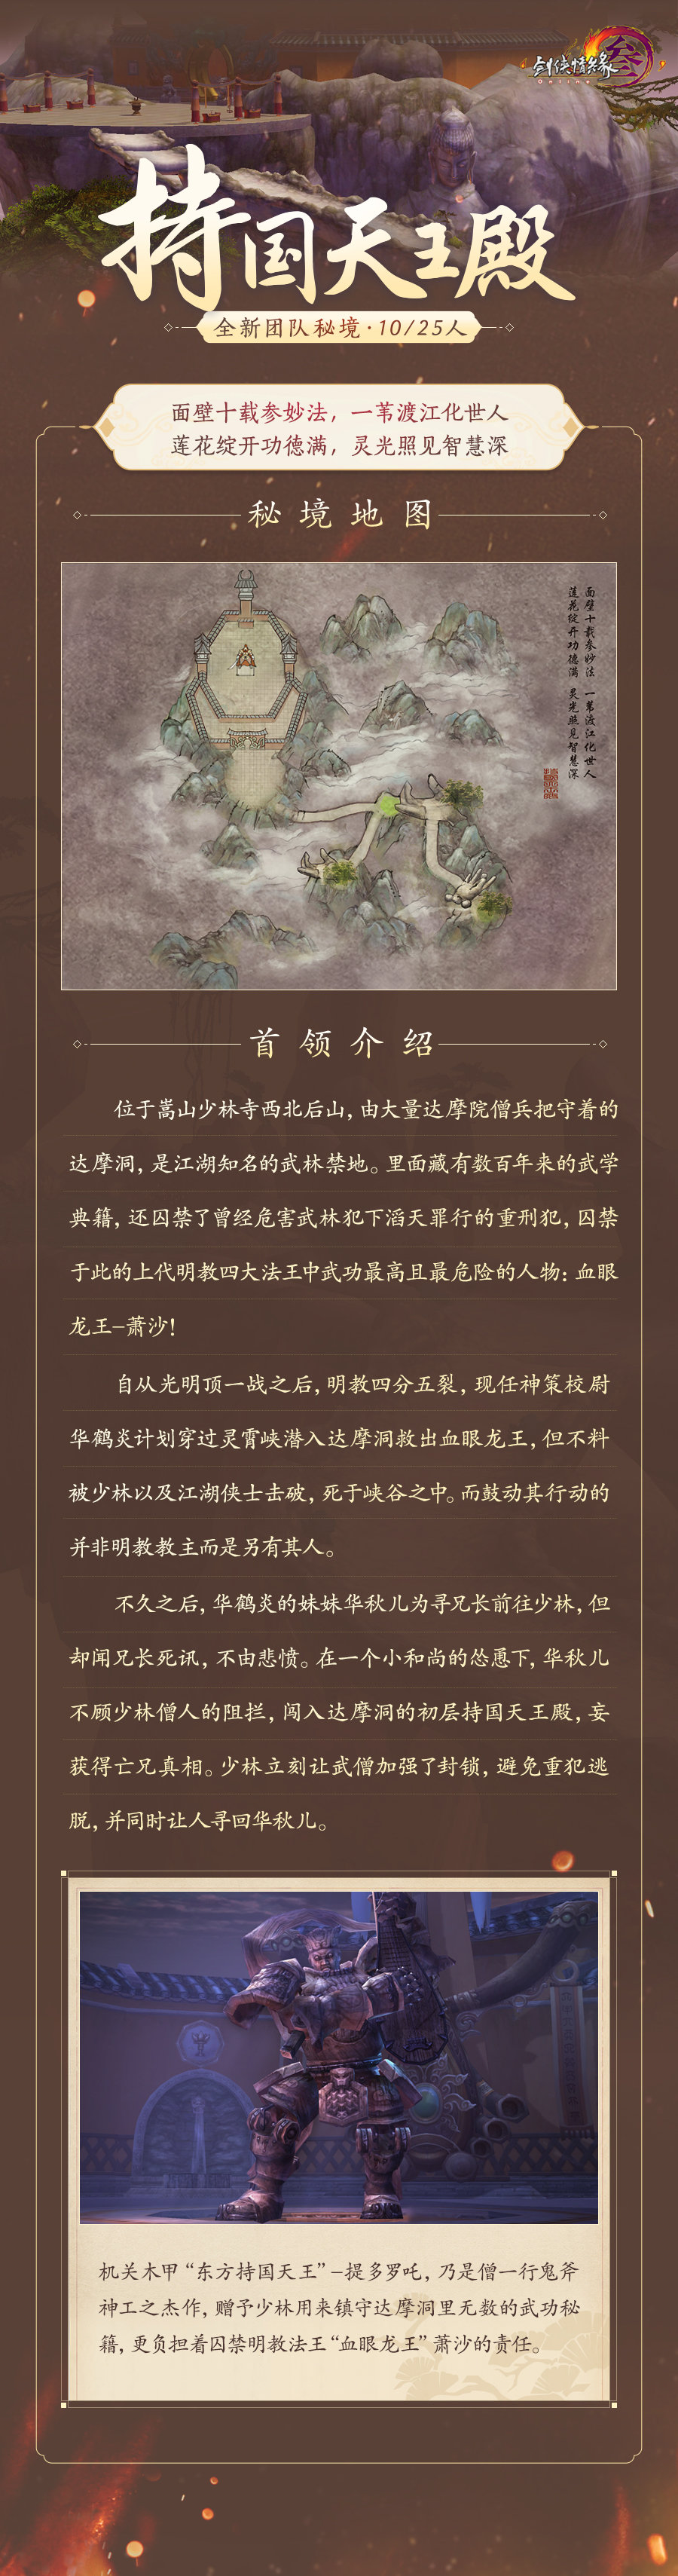 《剑网3》怀旧服单首领团队秘境下周开放  大唐江湖再起狂澜